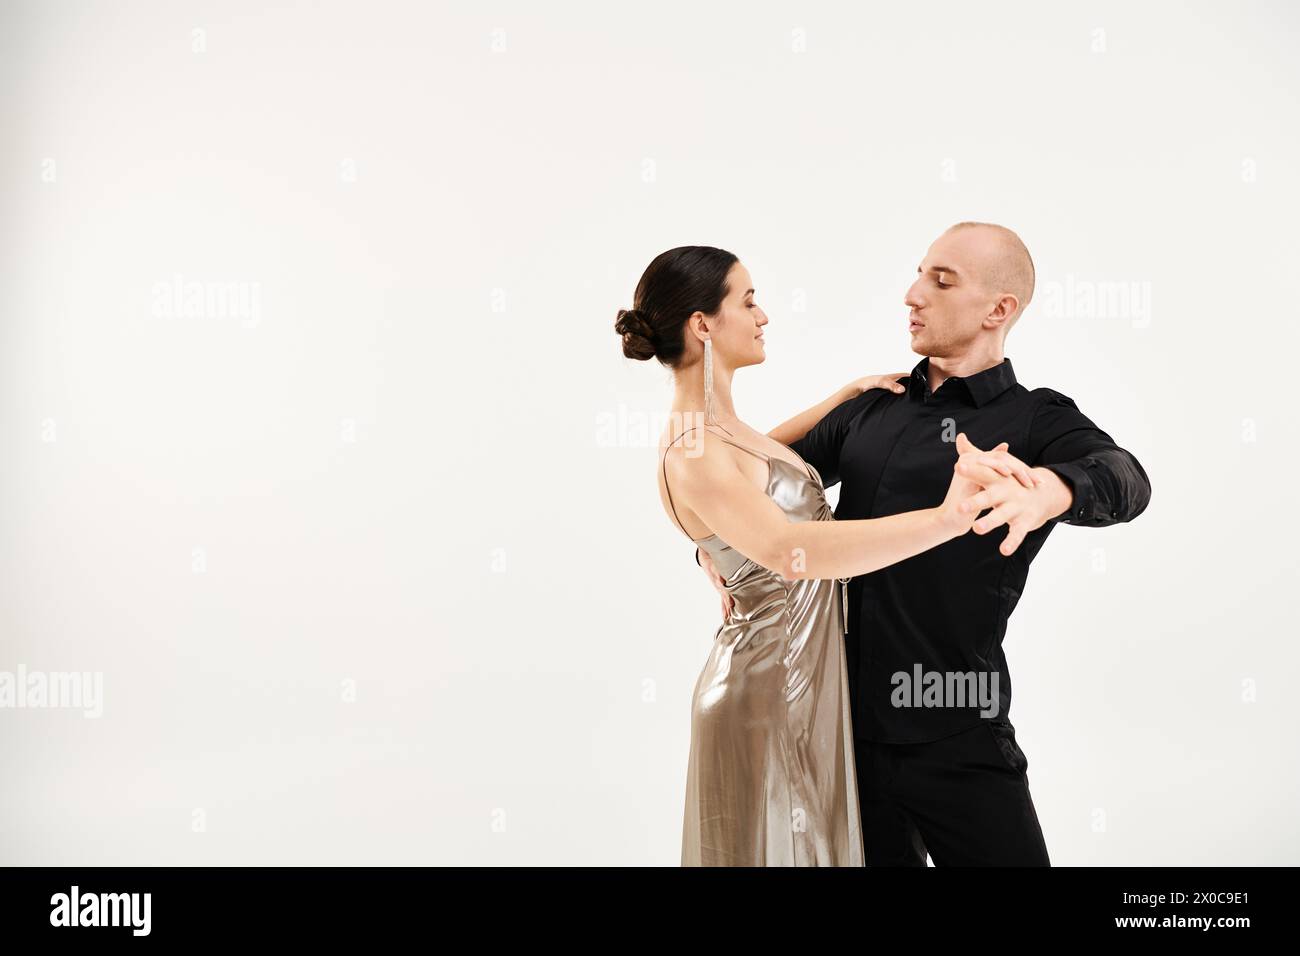 Ein junger Mann in schwarzer Kleidung und eine junge Frau in einem glänzenden Kleid tanzen fließend. Stockfoto